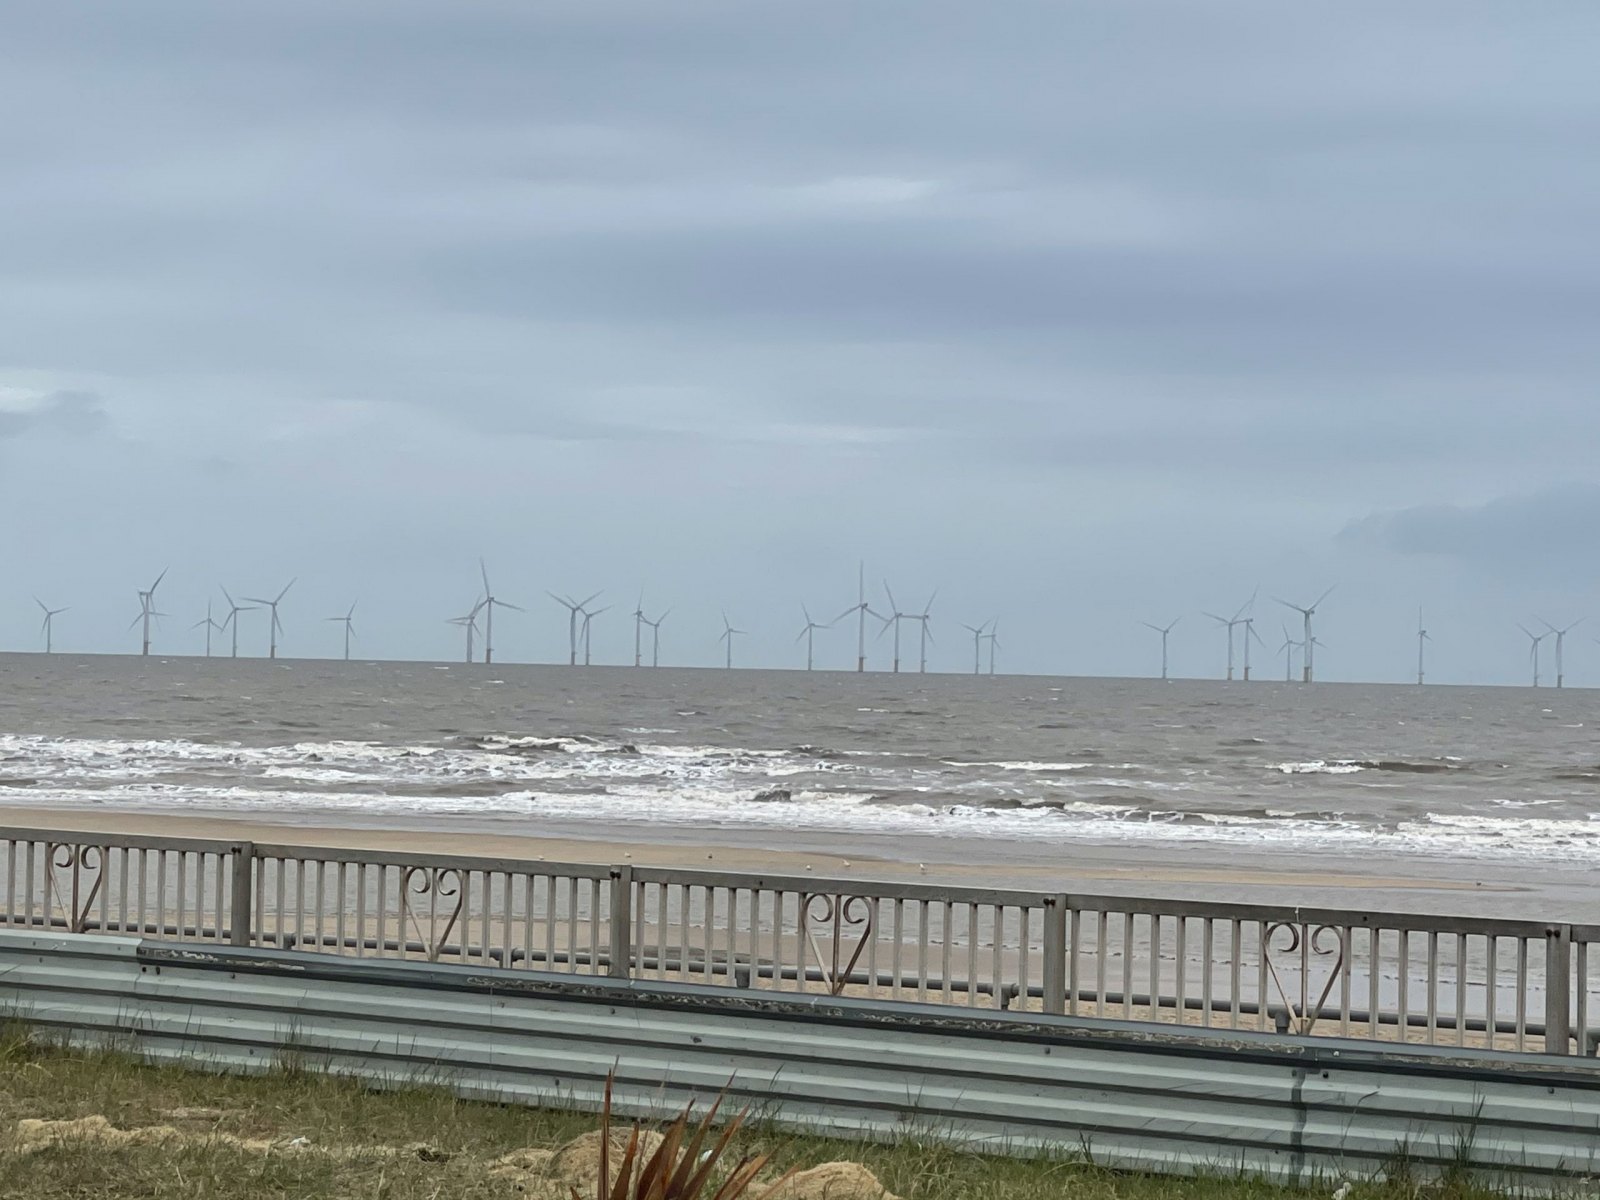 Wind farms off shore